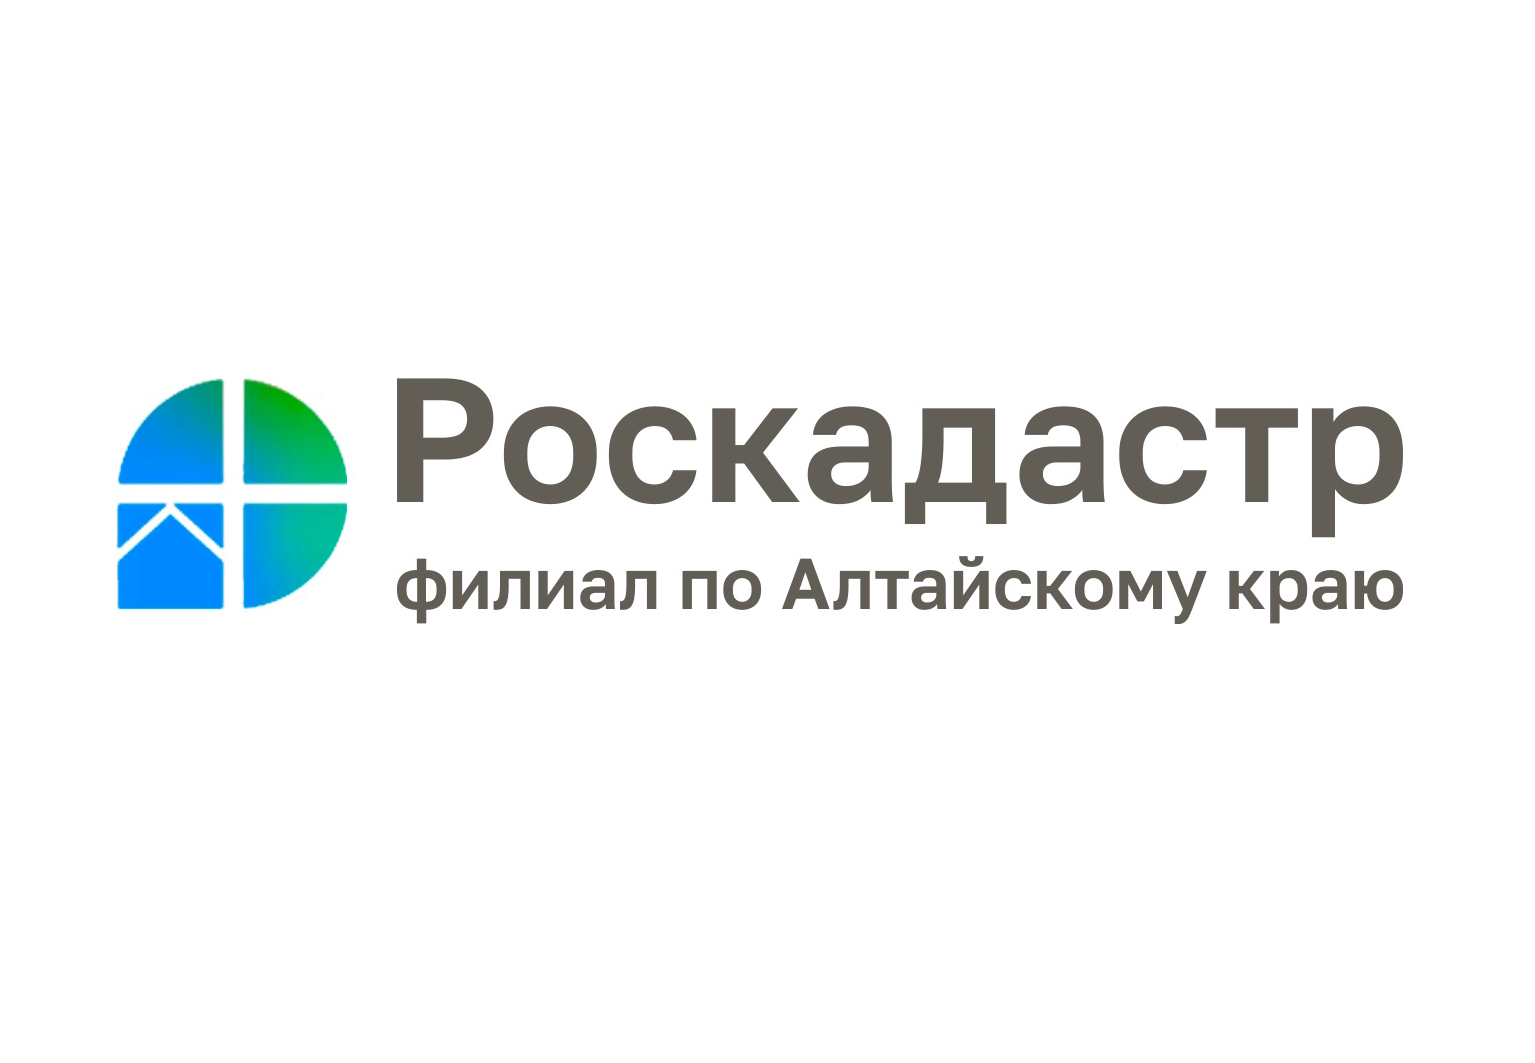 Эксперты Роскадастра по Алтайскому краю расскажут как исправить технические или реестровые ошибки.